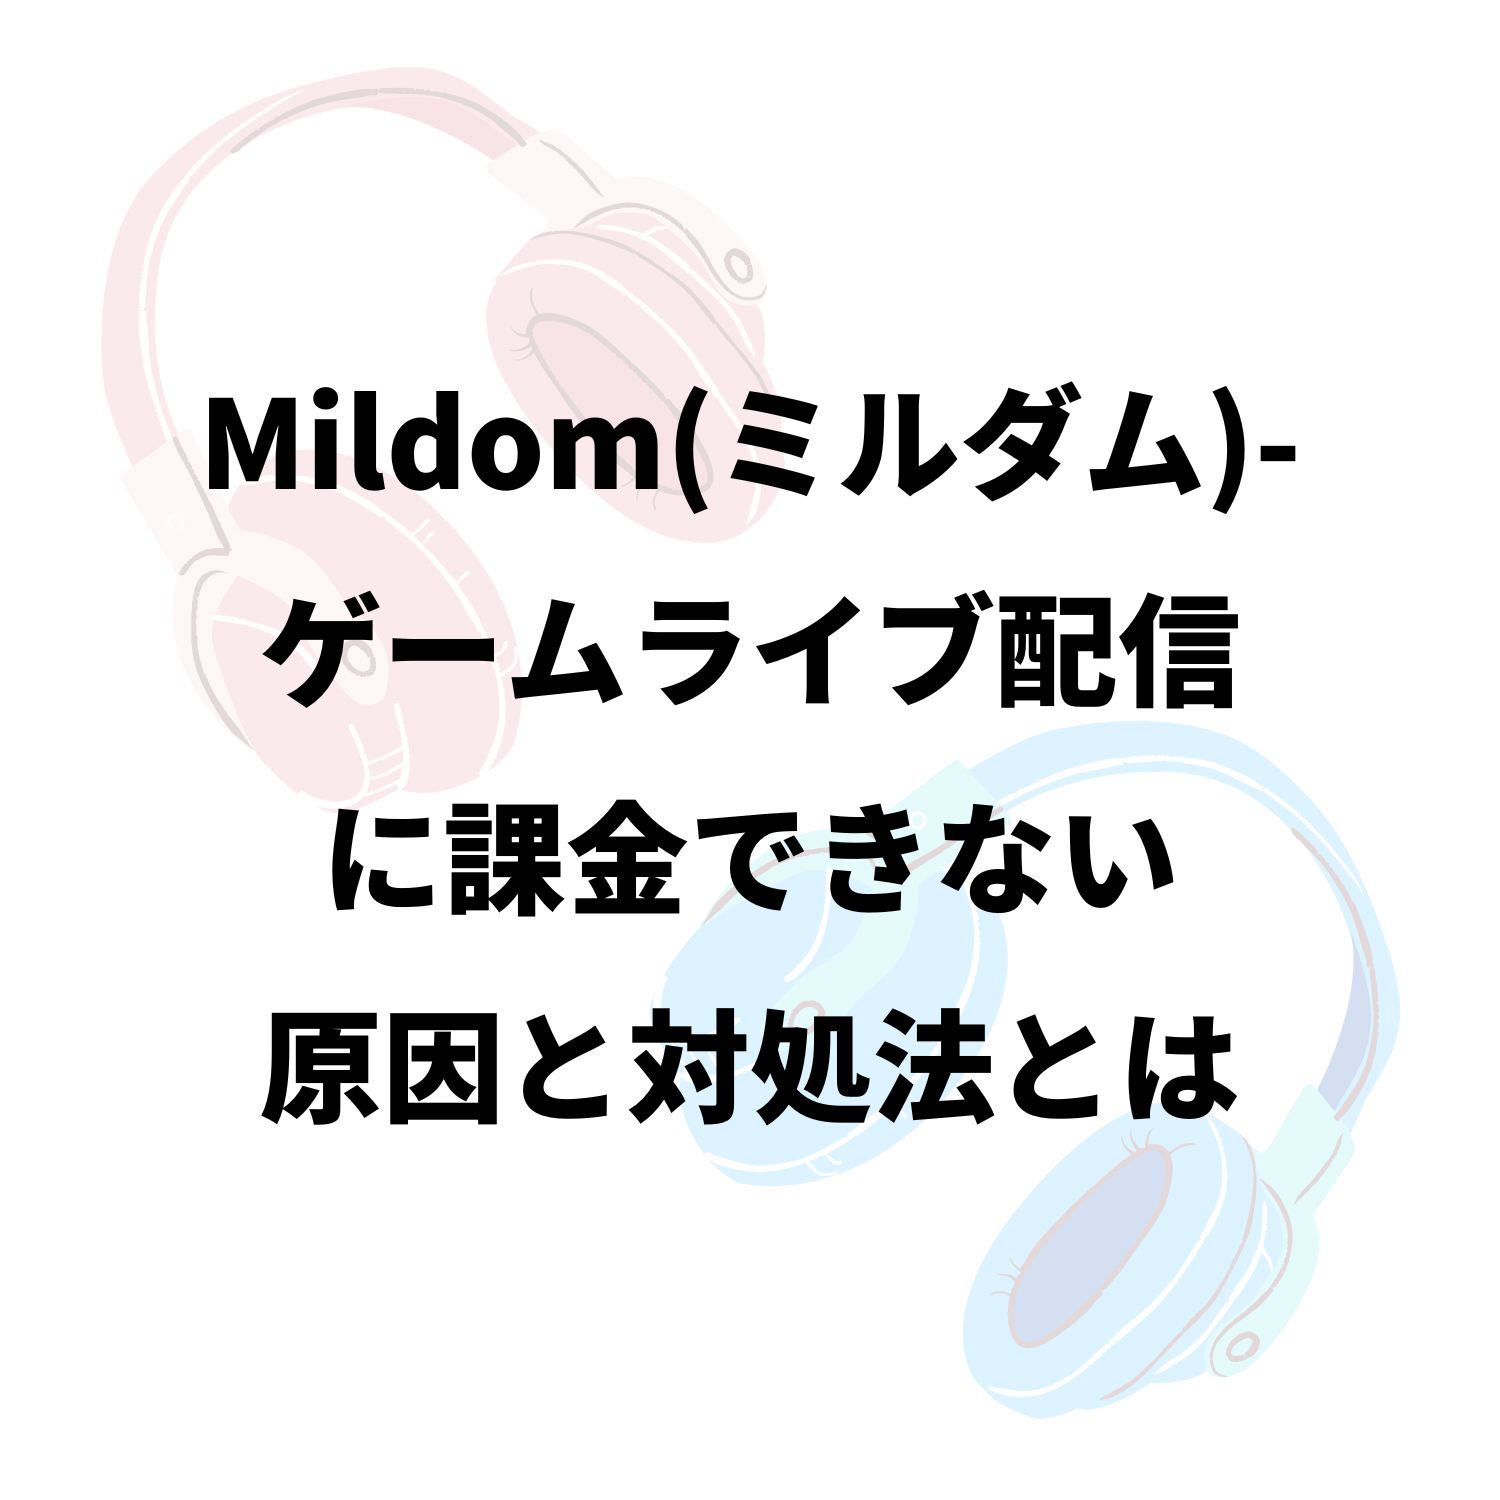 Mildom（ミルダム）−ゲームライブ配信に課金できない原因と対処法とは #Mildom（ミルダム）−ゲームライブ配信